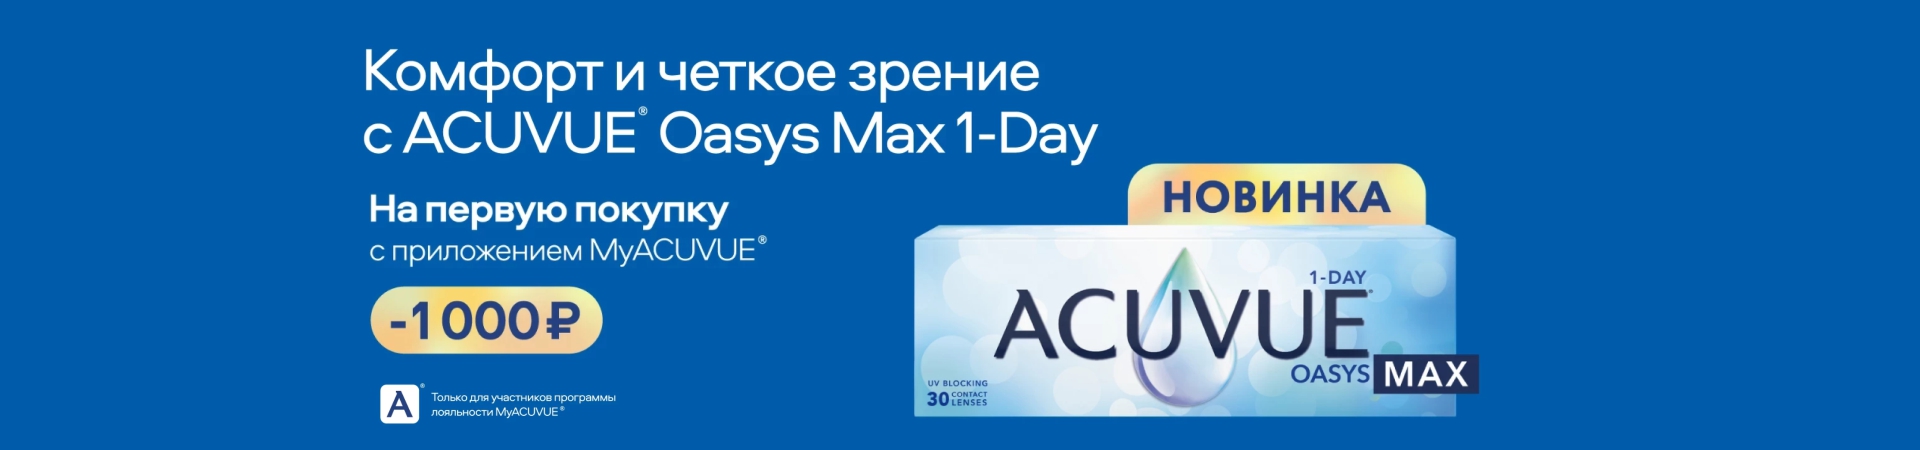 КОМФОРТ И ЧЕТКОЕ ЗРЕНИЕ С ACUVUE® OASYS MAX 1-DAY